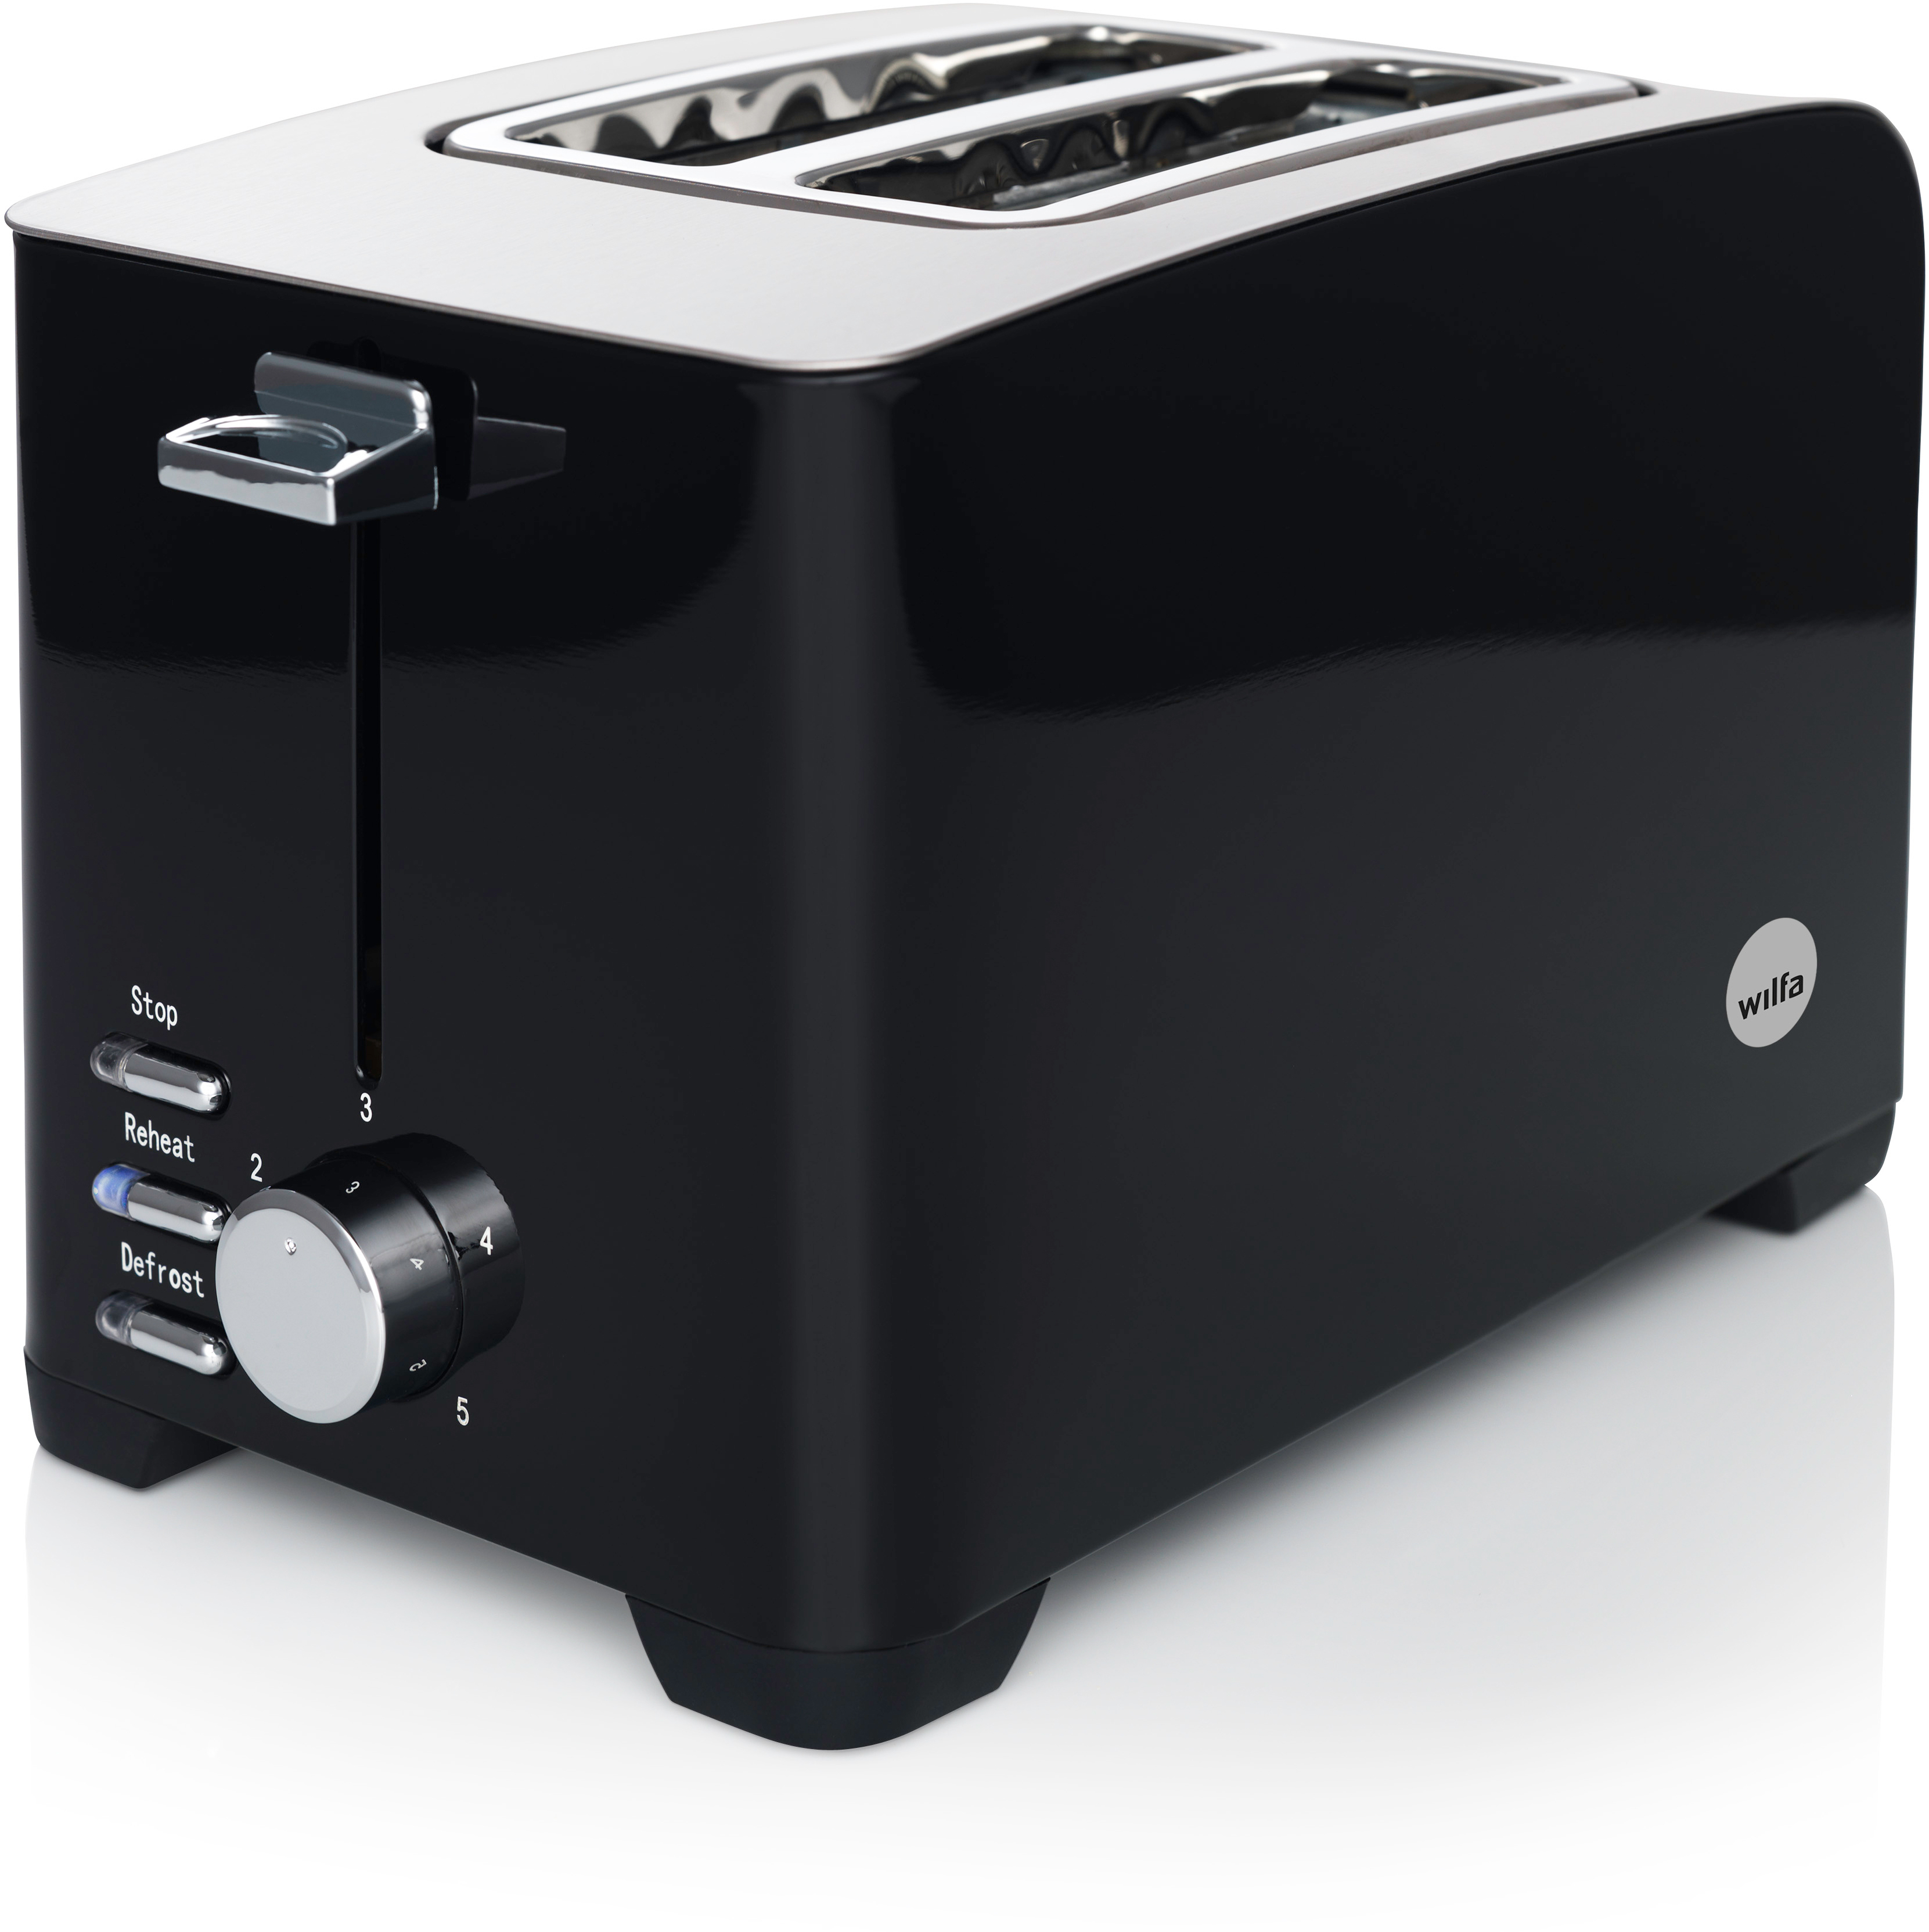 WILFA FROKOST TO-1B Toaster Schlitze: 2) (800 Watt, Schwarz